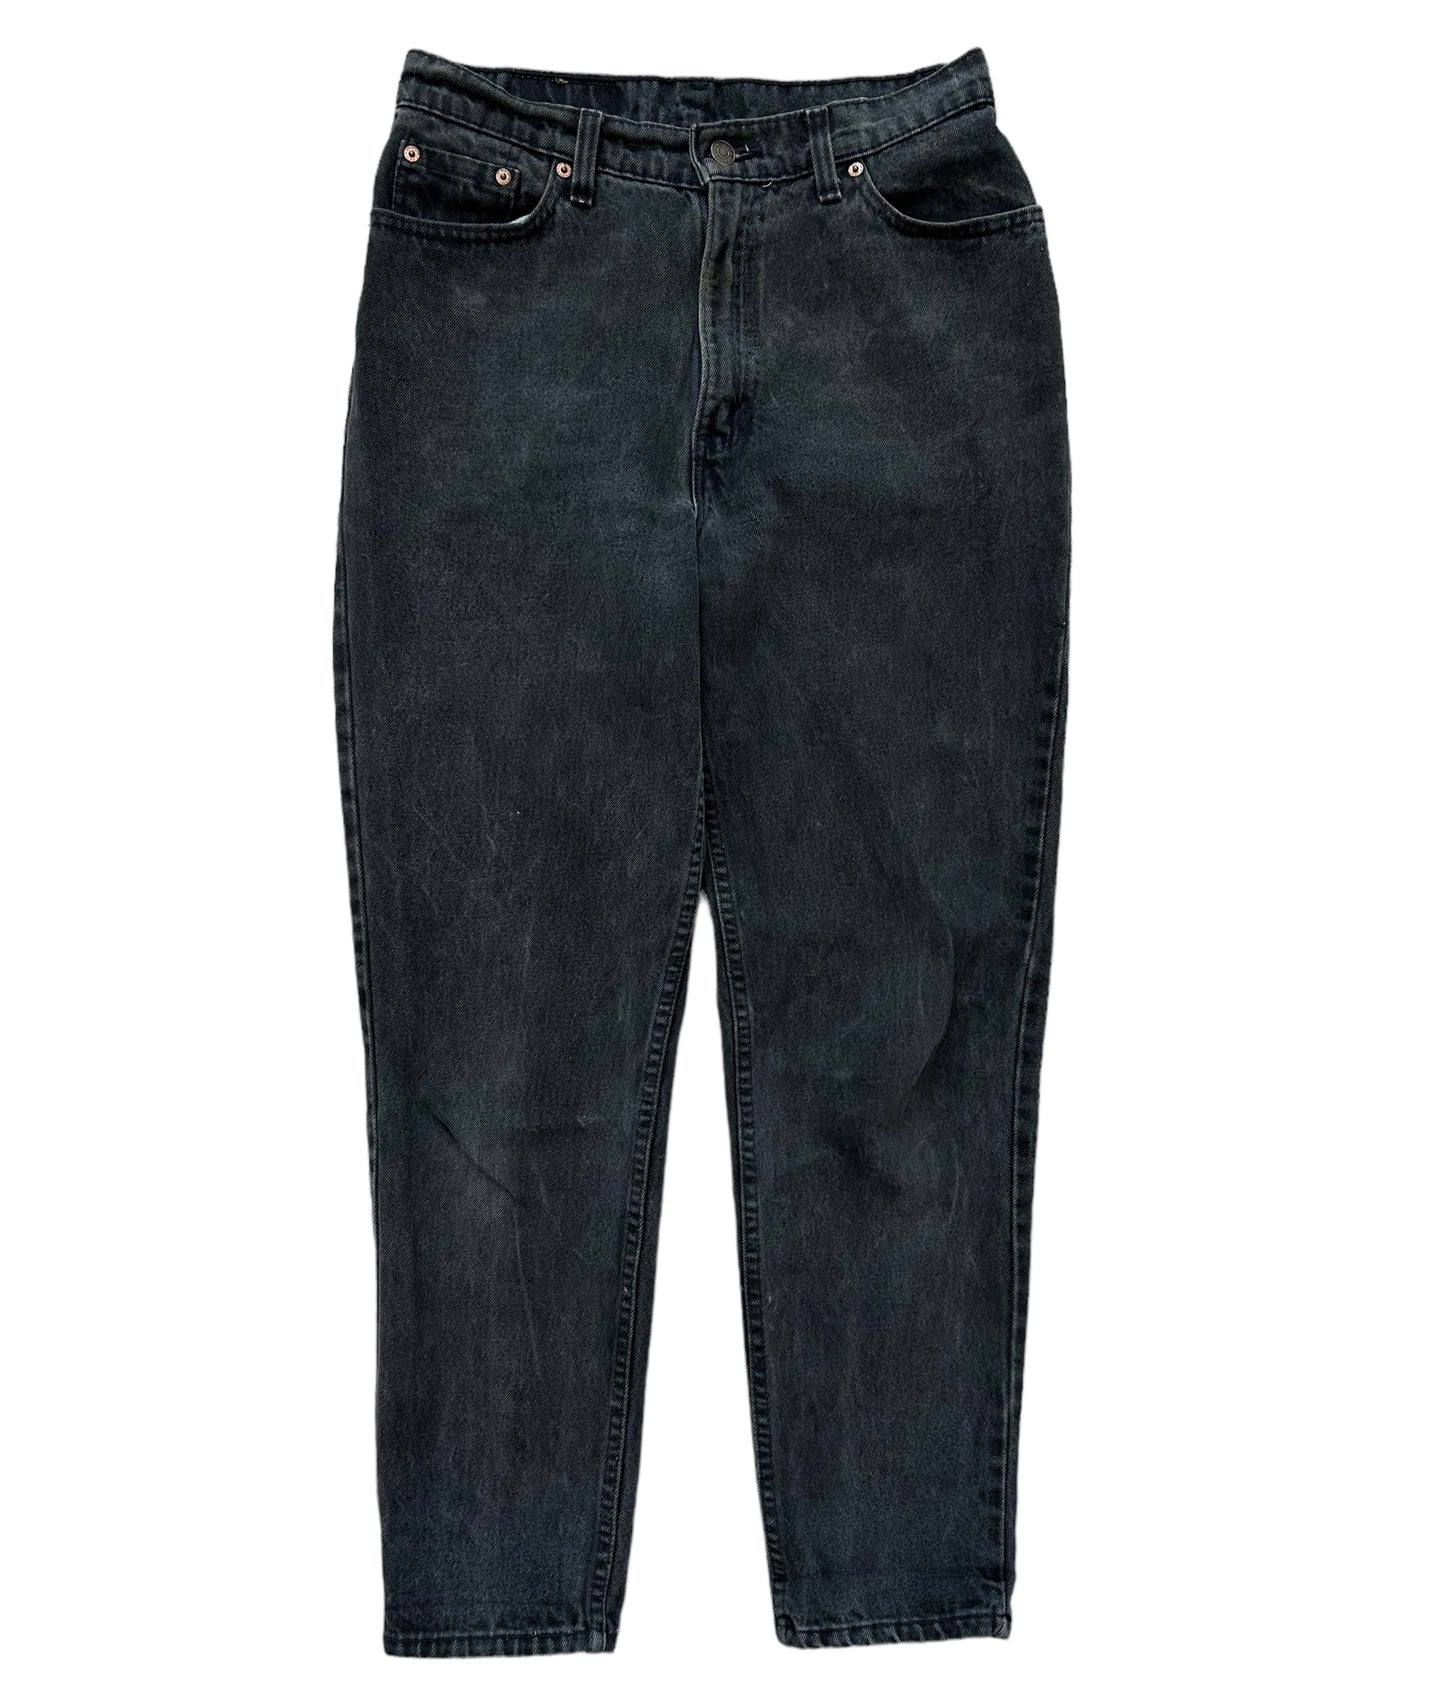 90's Levis 512 Denim Jeans